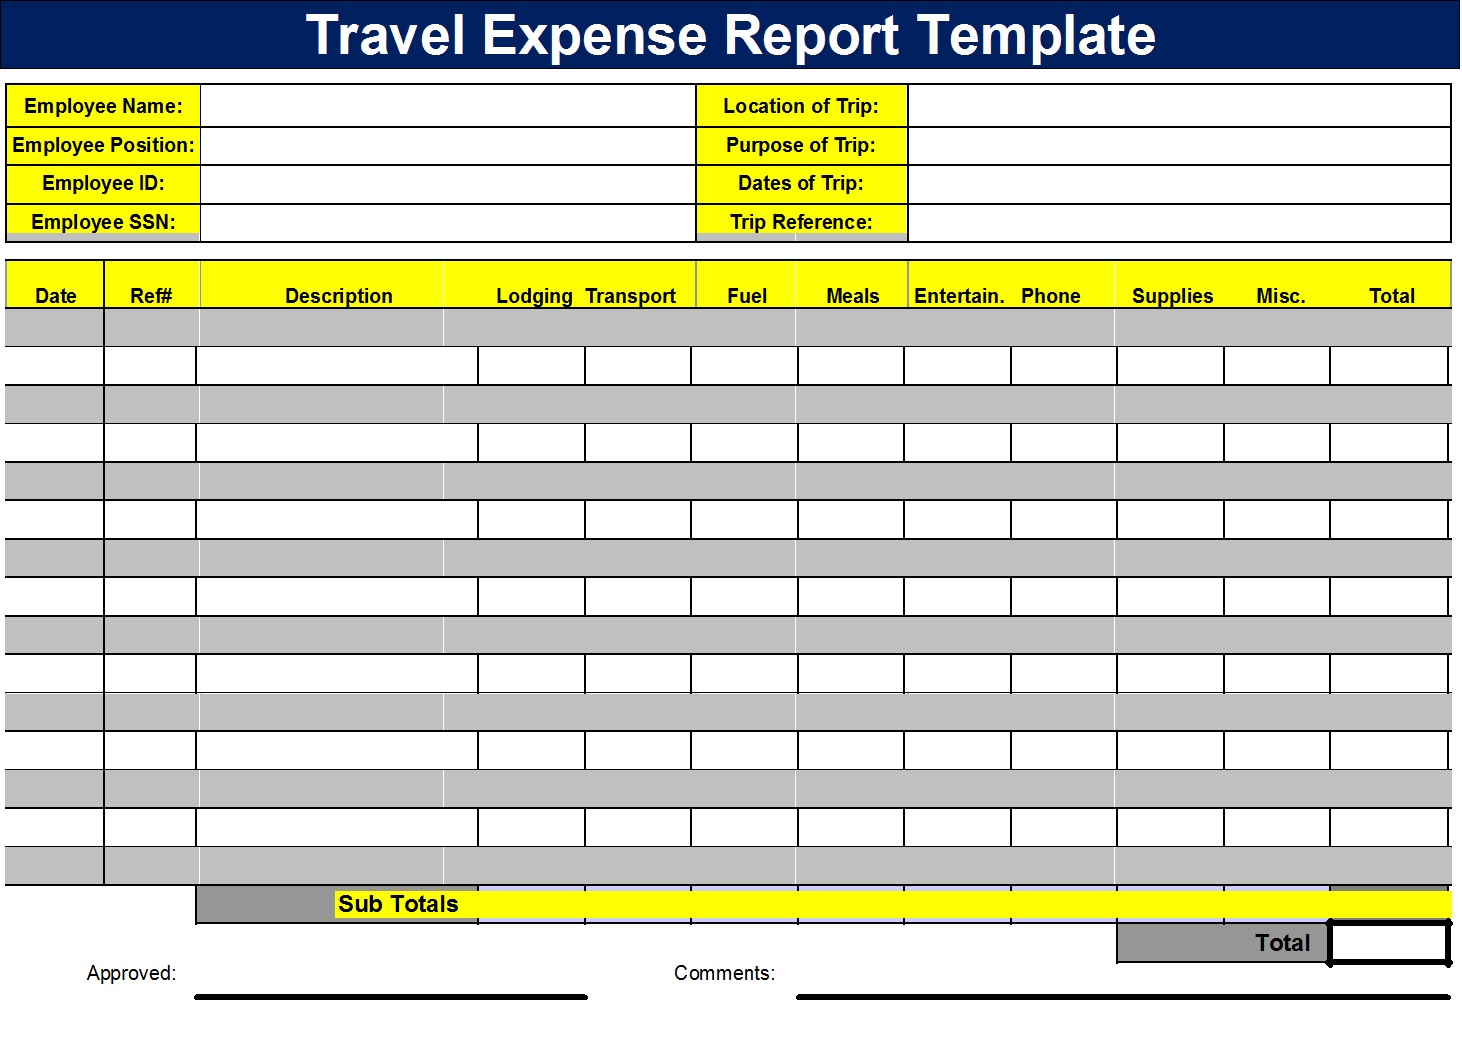 claim back work travel expenses